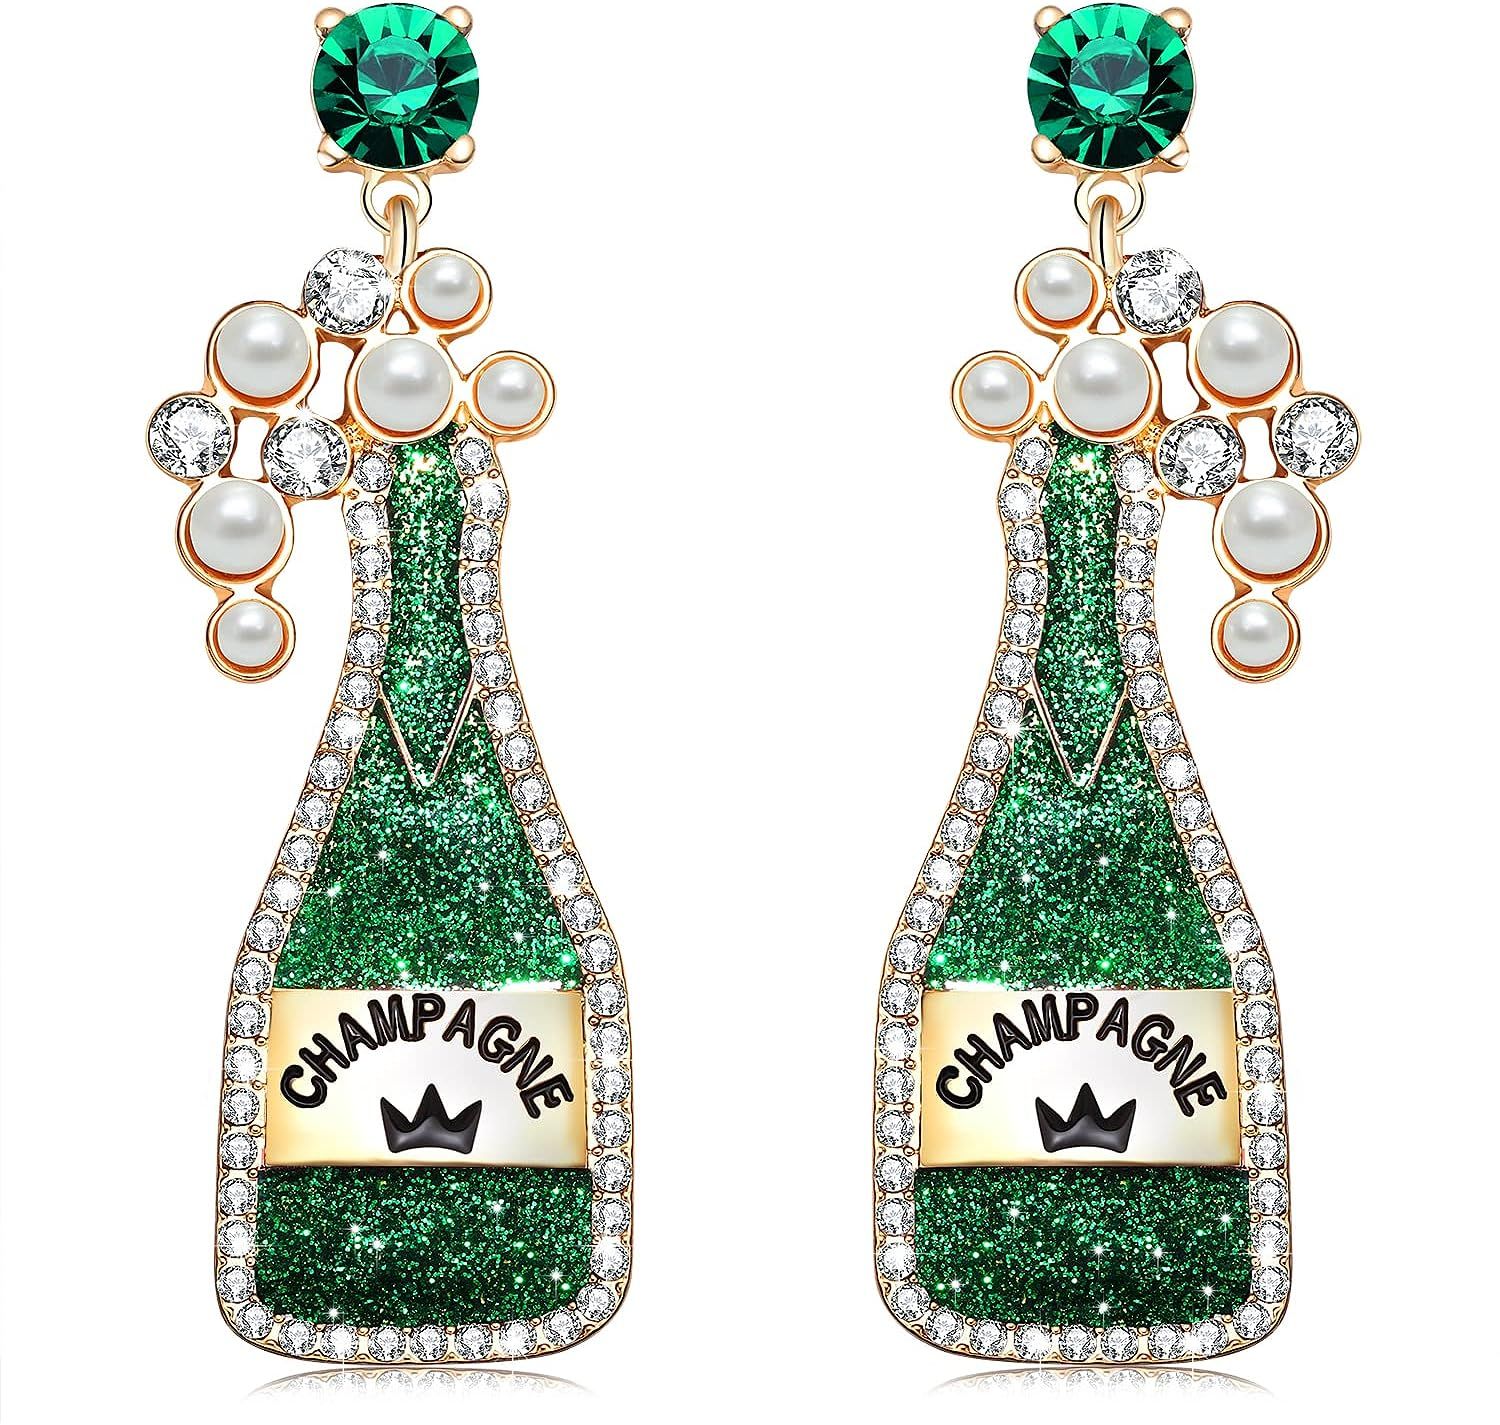 Boderier Champagne Earrings Bright Colored Glitter Champagne Bottle Drop Earrings Statement Festi... | Amazon (US)